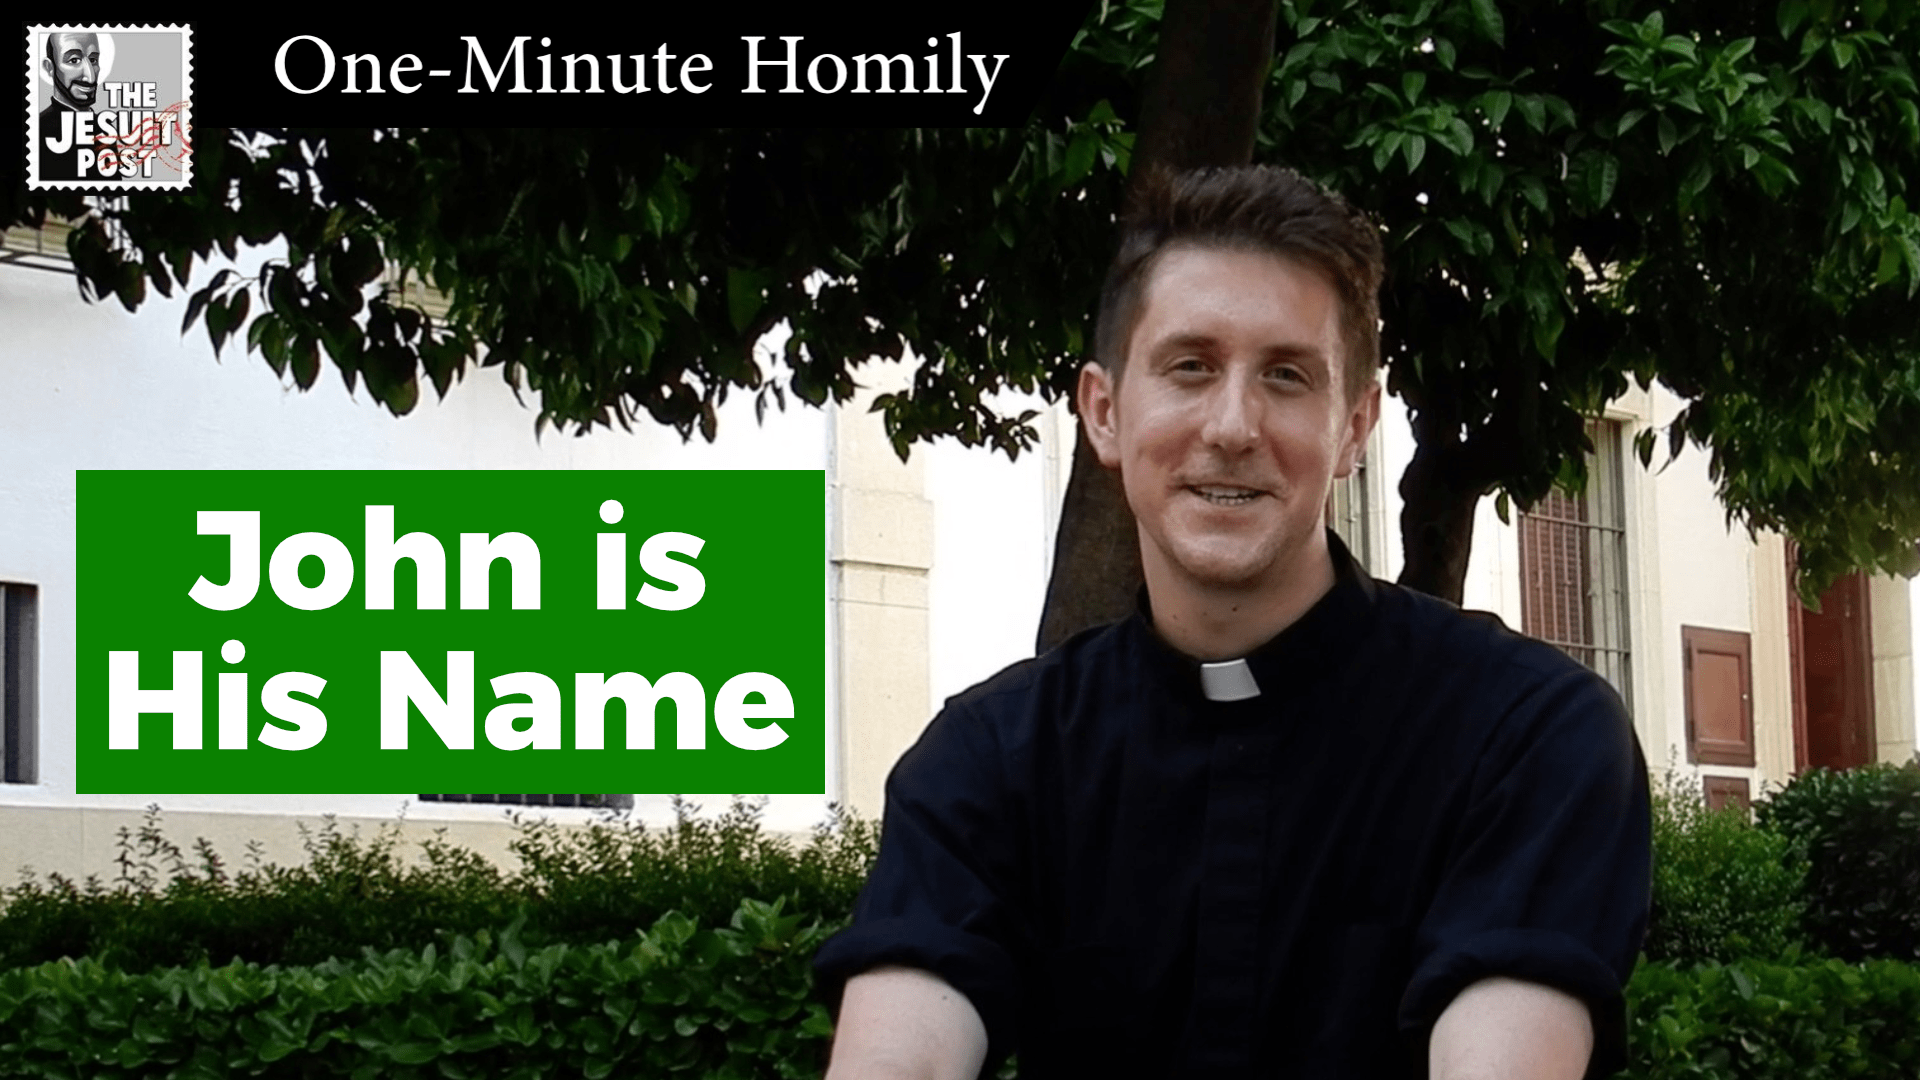 One-Minute Homily: “John is His Name” (English/Español)